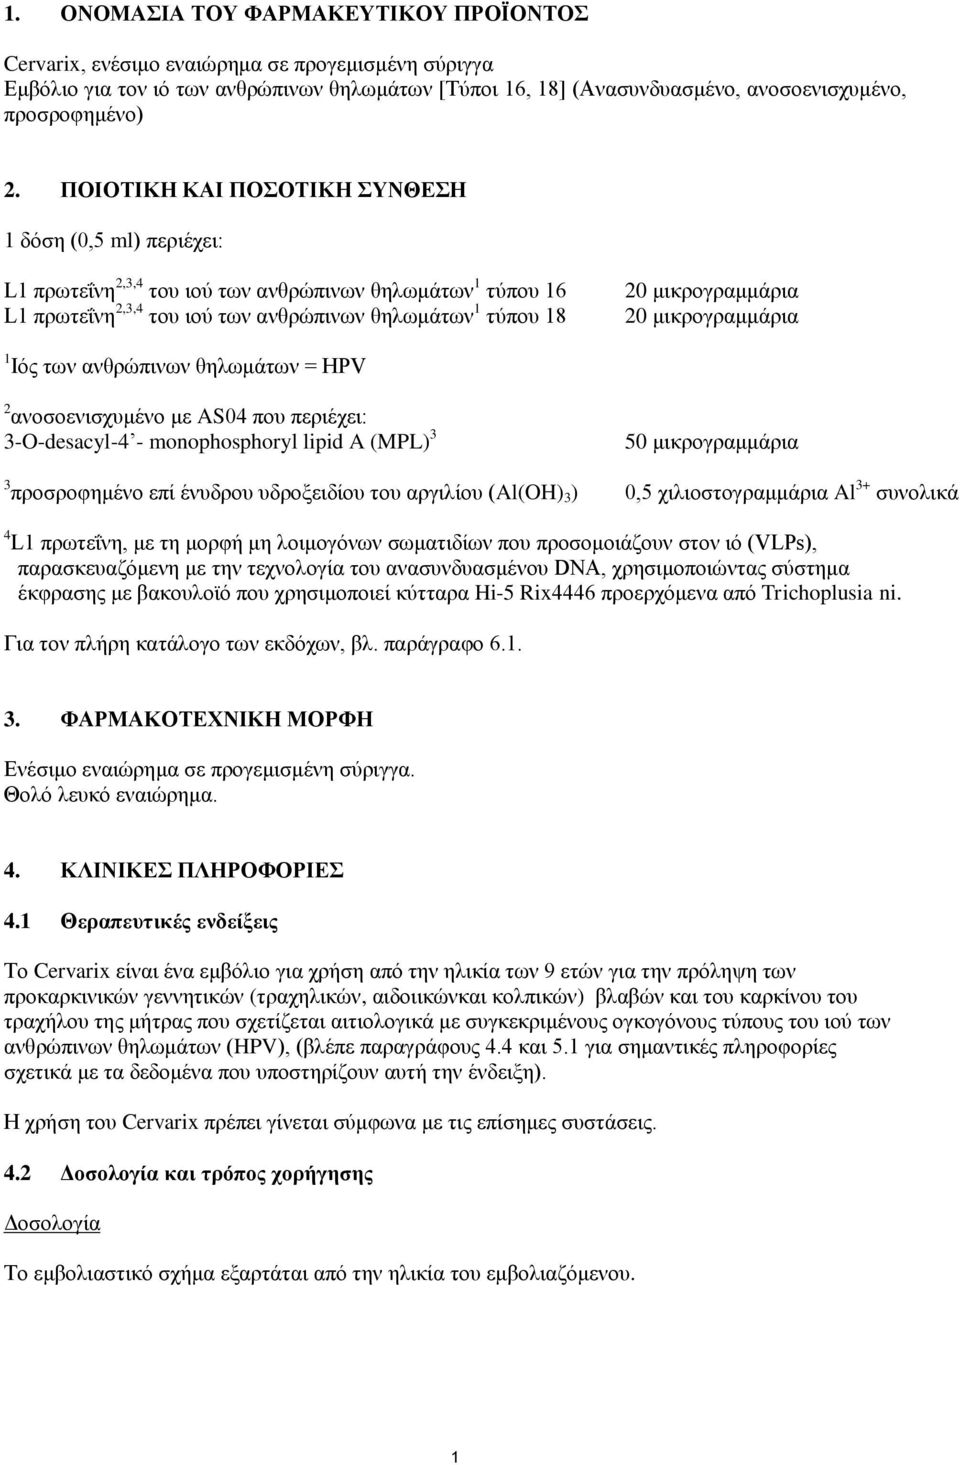 μικρογραμμάρια 20 μικρογραμμάρια 1 Ιός των ανθρώπινων θηλωμάτων = HPV 2 ανοσοενισχυμένο με AS04 που περιέχει: 3-O-desacyl-4 - monophosphoryl lipid A (MPL) 3 50 μικρογραμμάρια 3 προσροφημένο επί